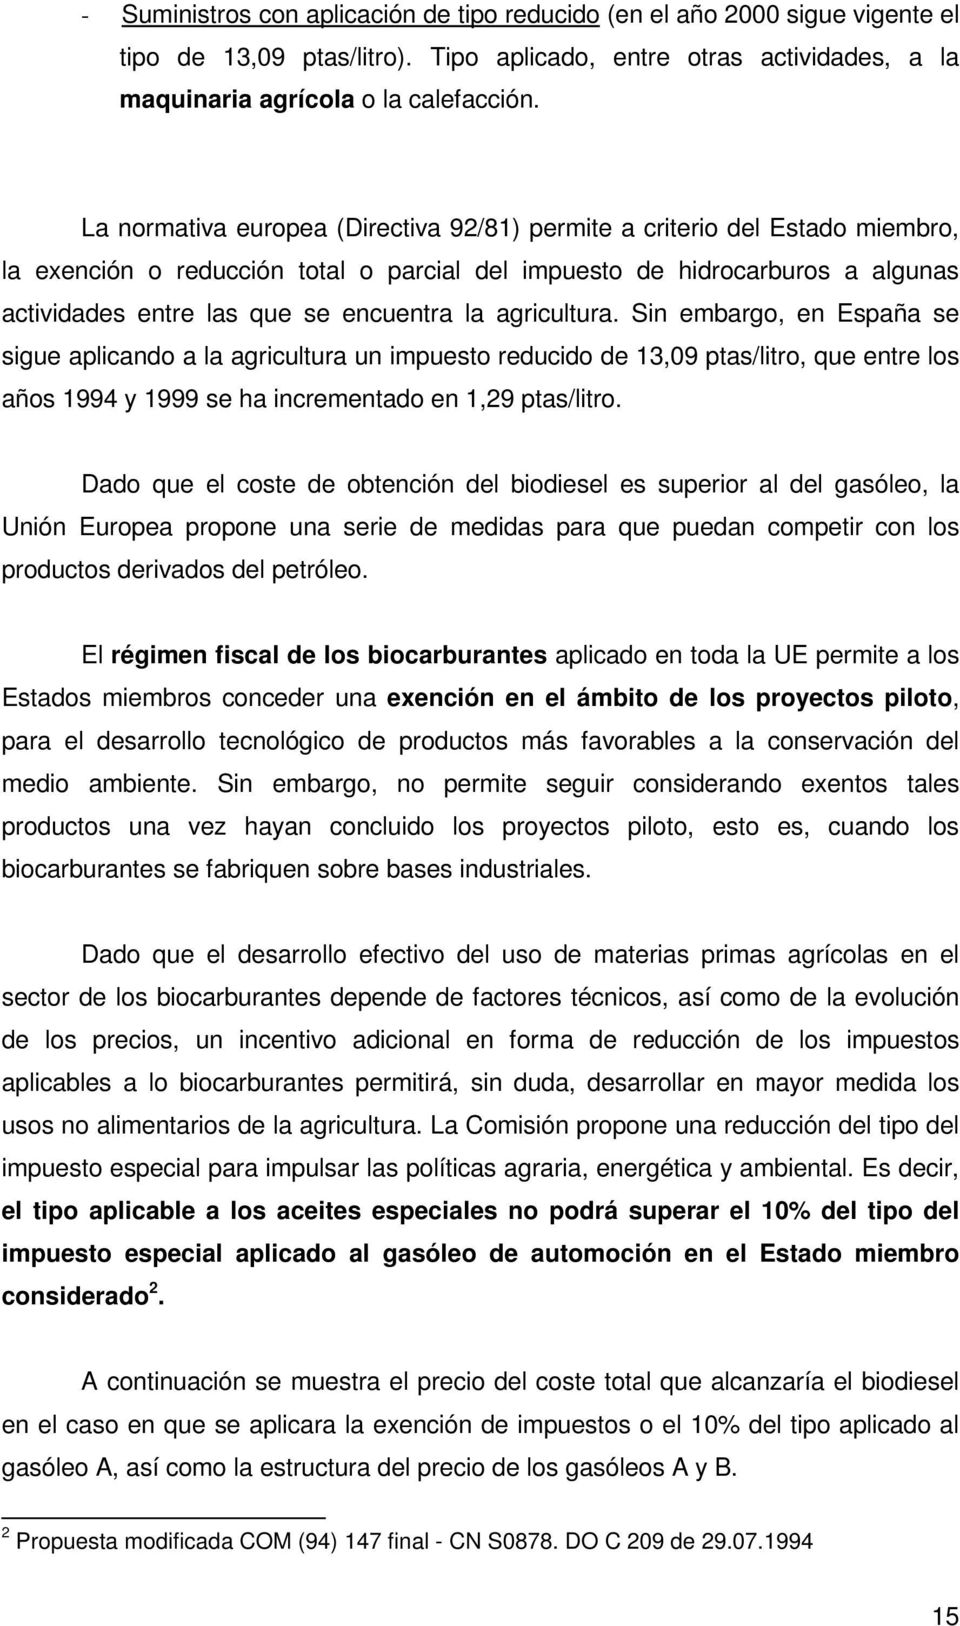 agricultura. Sin embargo, en España se sigue aplicando a la agricultura un impuesto reducido de 13,09 ptas/litro, que entre los años 1994 y 1999 se ha incrementado en 1,29 ptas/litro.